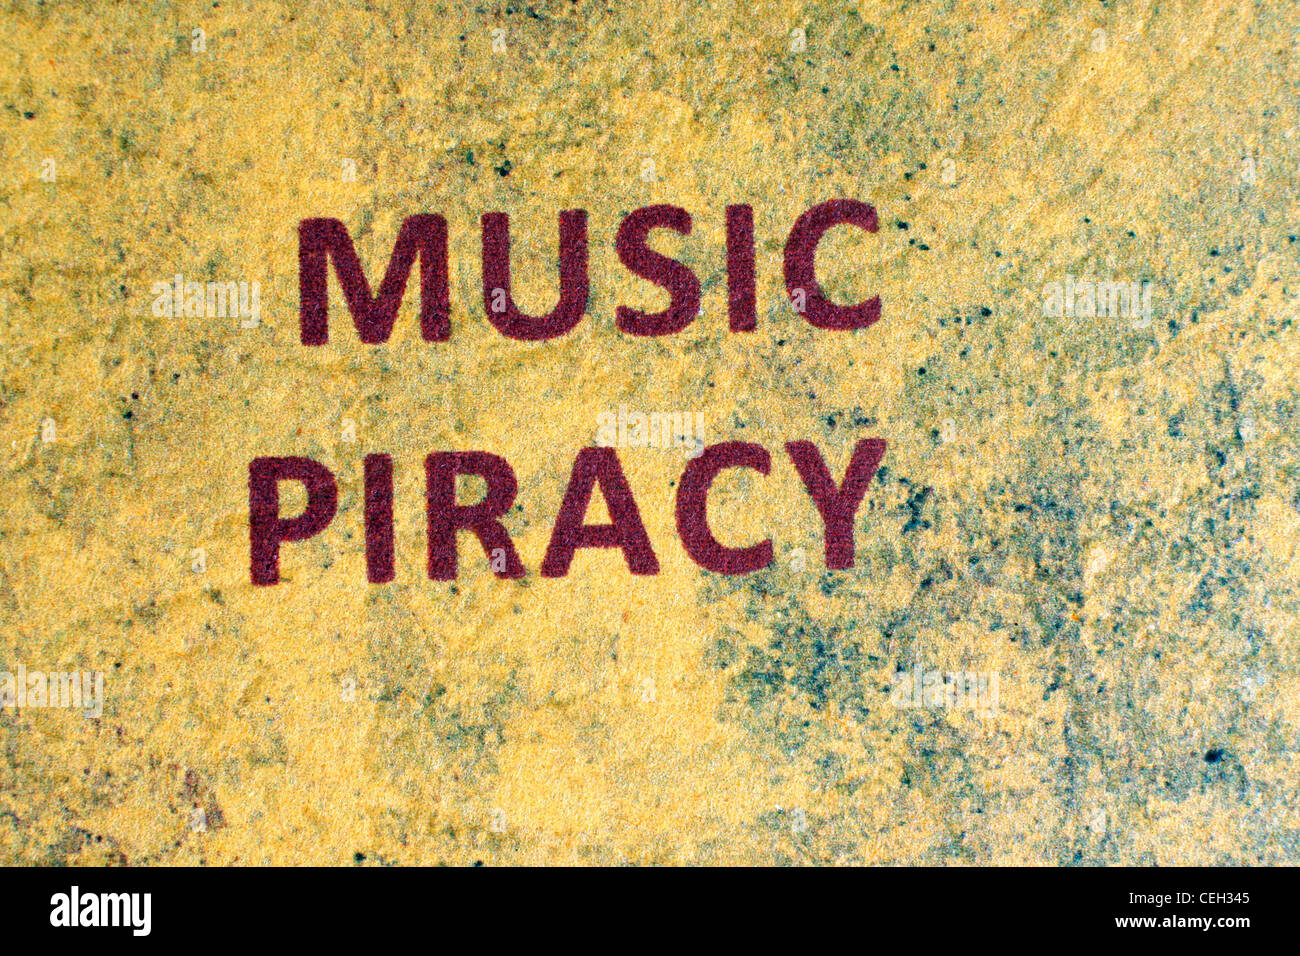 Web piracy Stock Photo